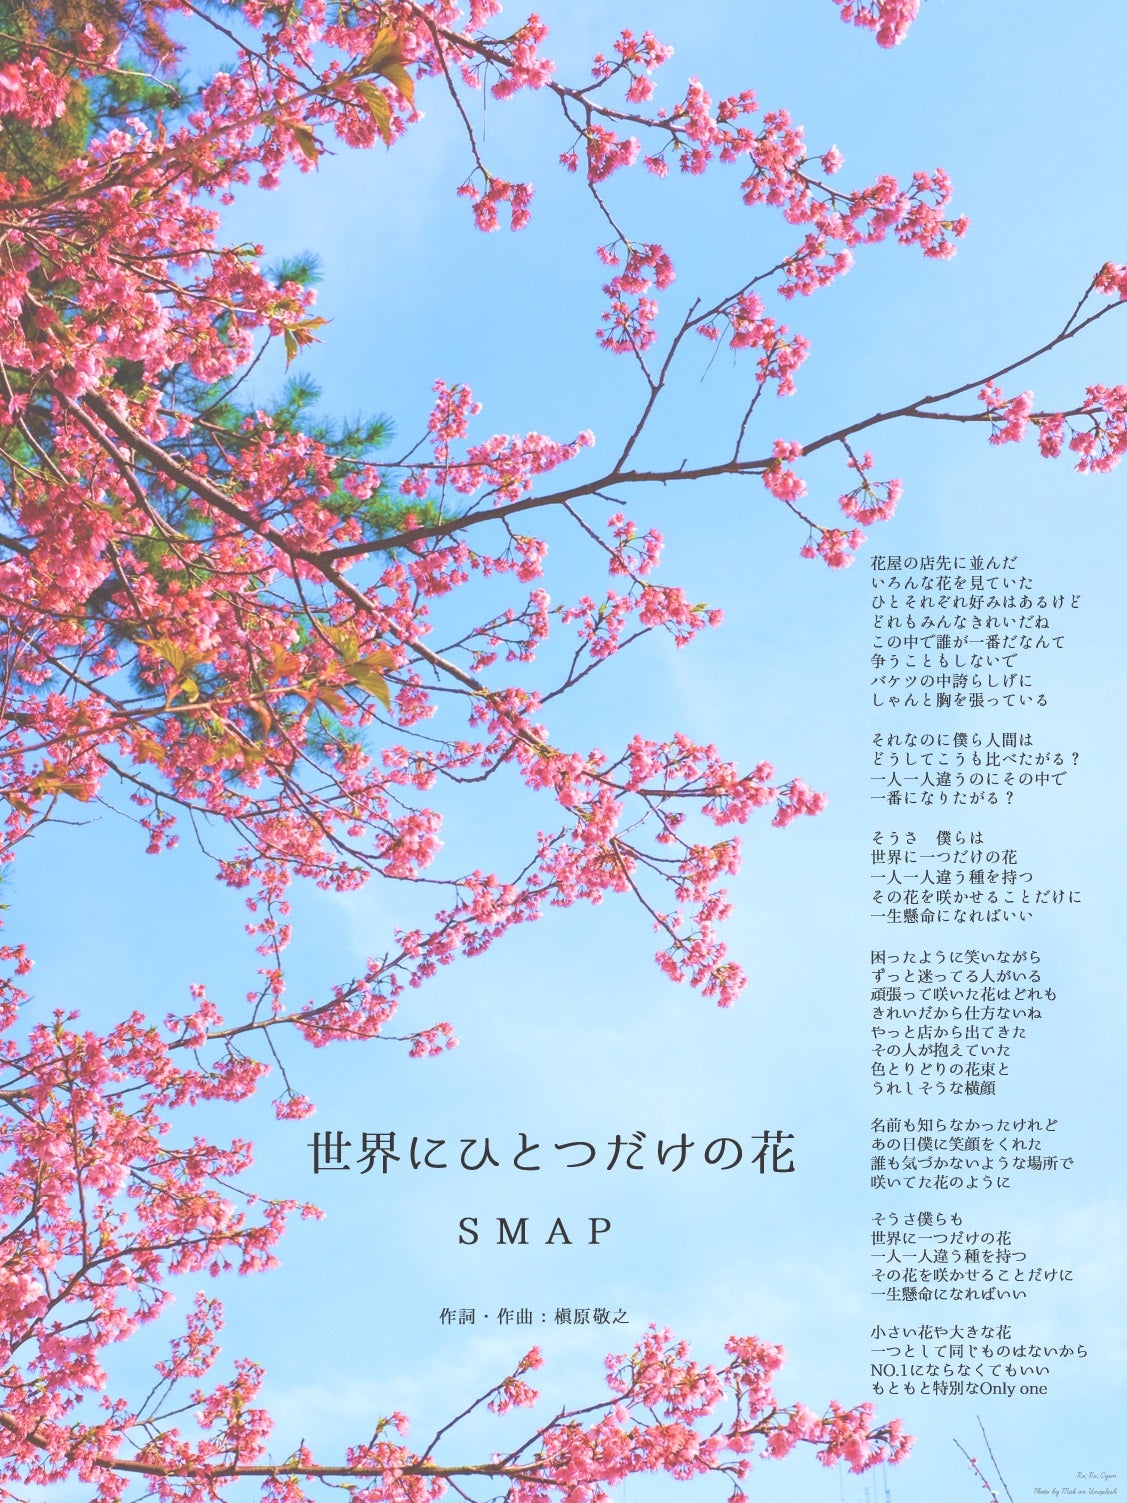 世界に一つだけの花 SMAP 歌詞画像＊Full歌詞＊Music Card Music Cards 音楽と言葉